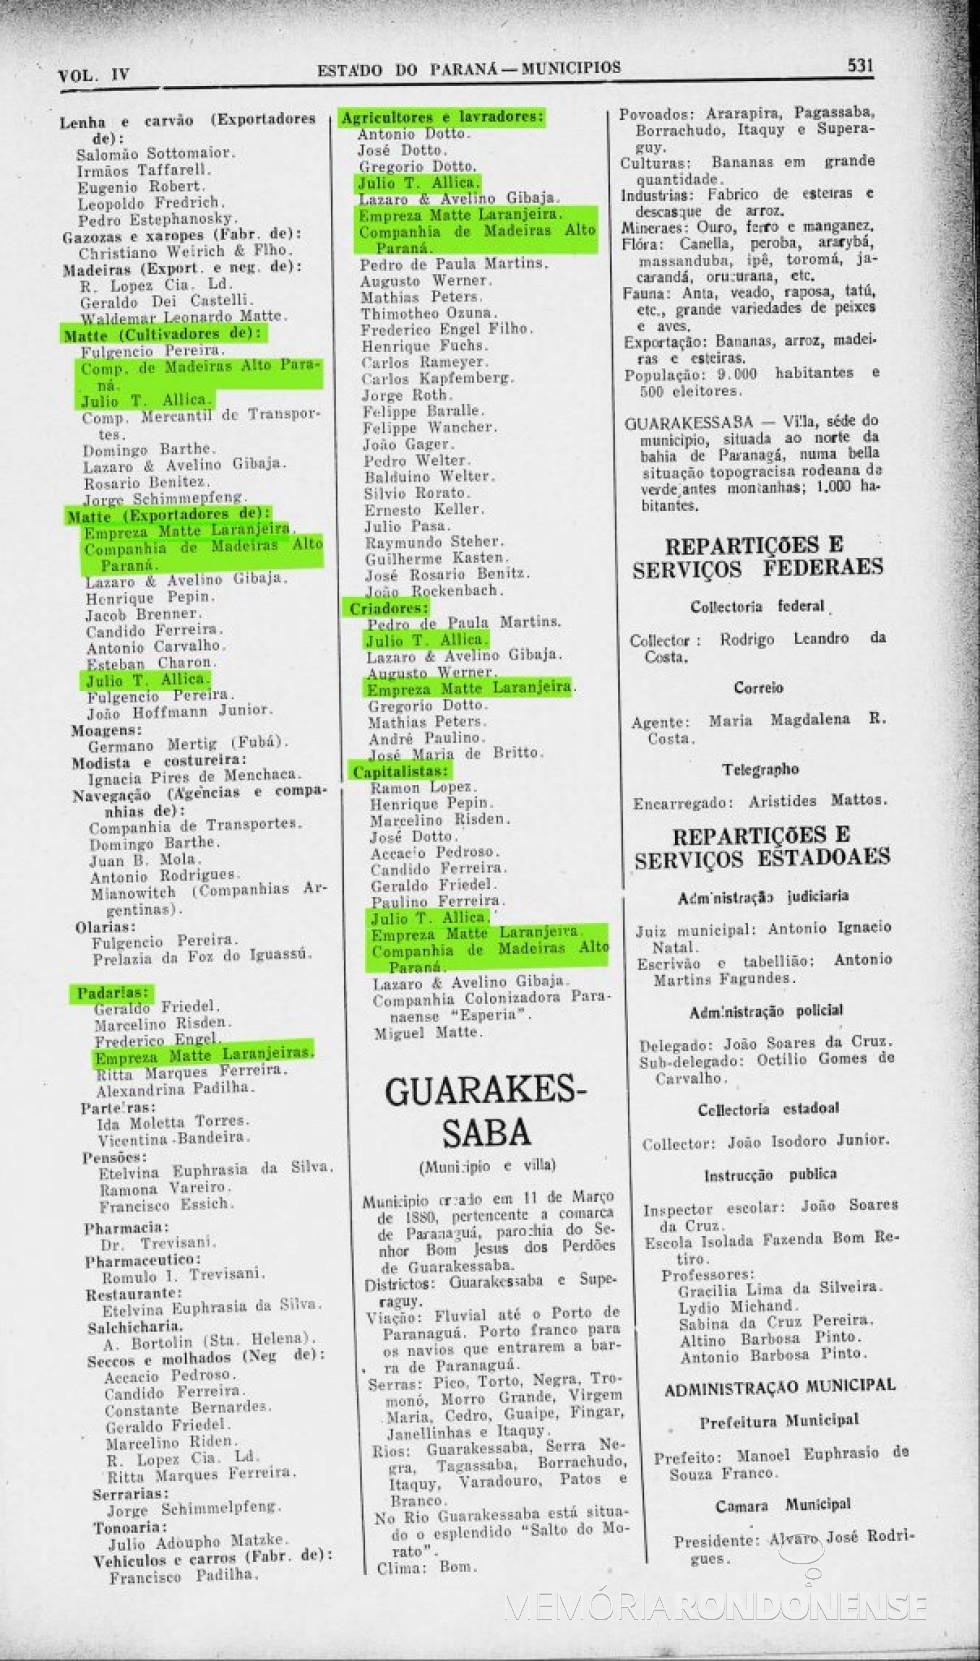 Página 532 do Almanak Laemmert com a parte final da publicação do Censo 1930 de Foz do Iguaçu.
Imagem: Acervo Biblioteca Nacional - FOTO 4 -